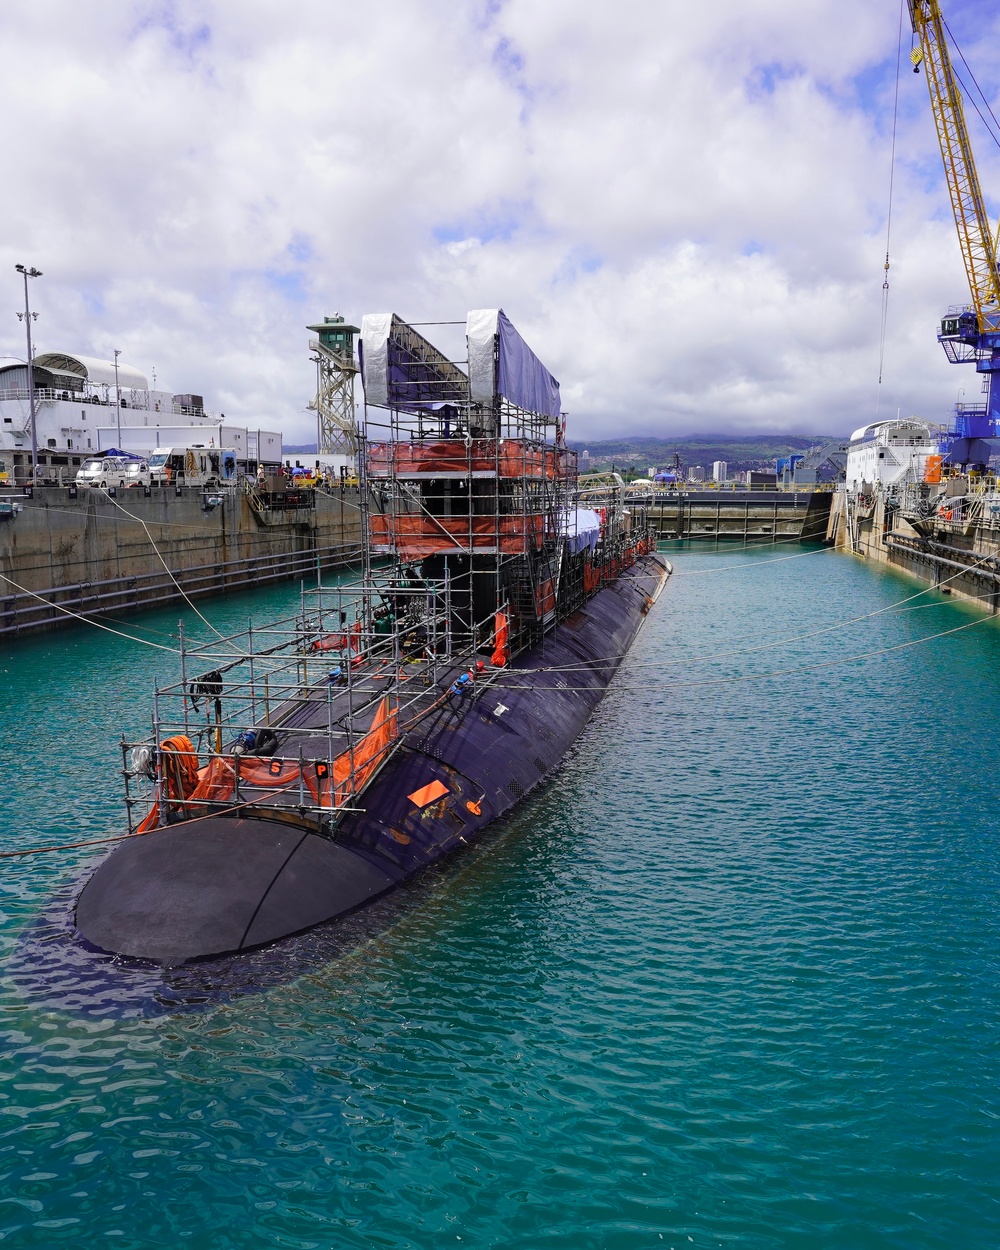 USS Colorado Enters Pearl Harbor Dry Dock